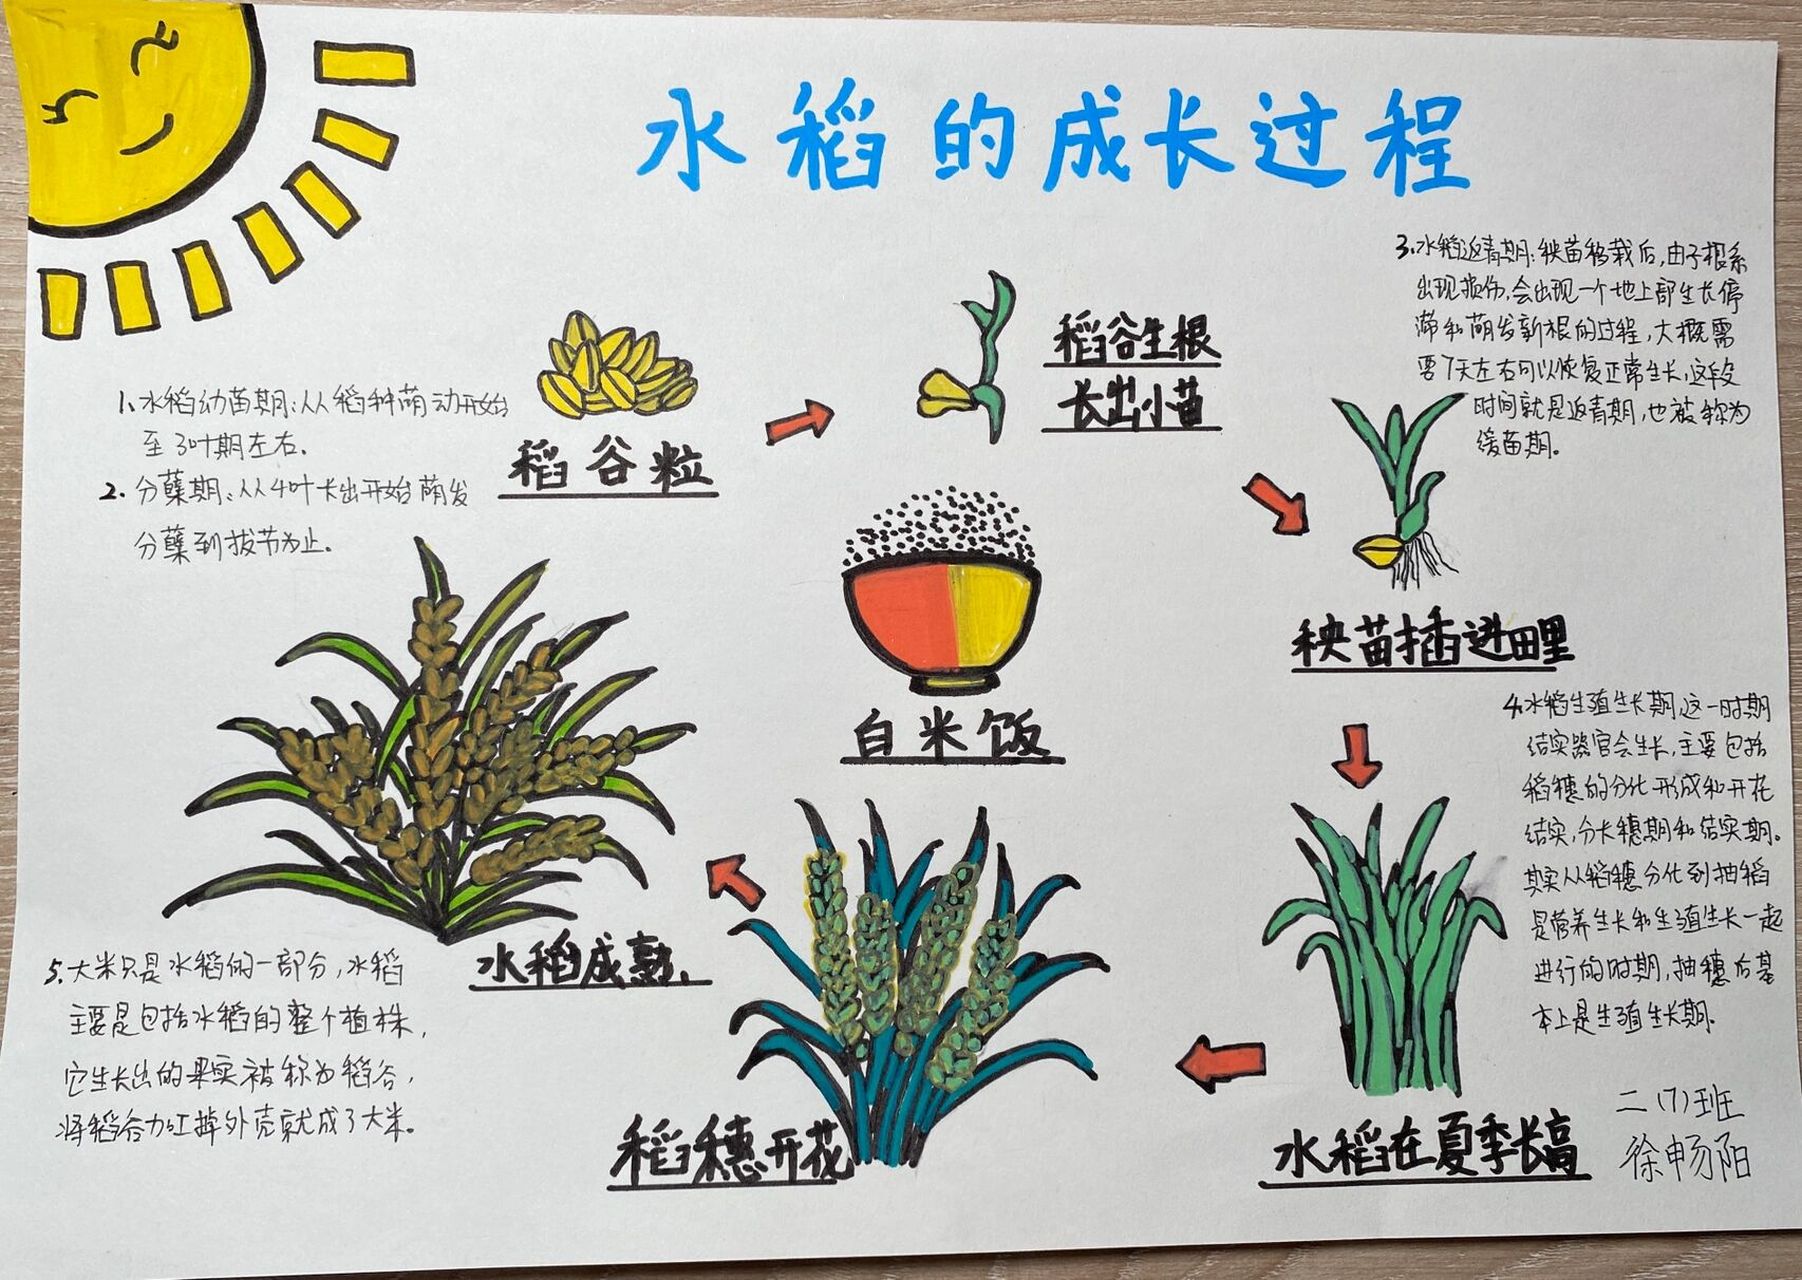 水稻成长的过程图解图片